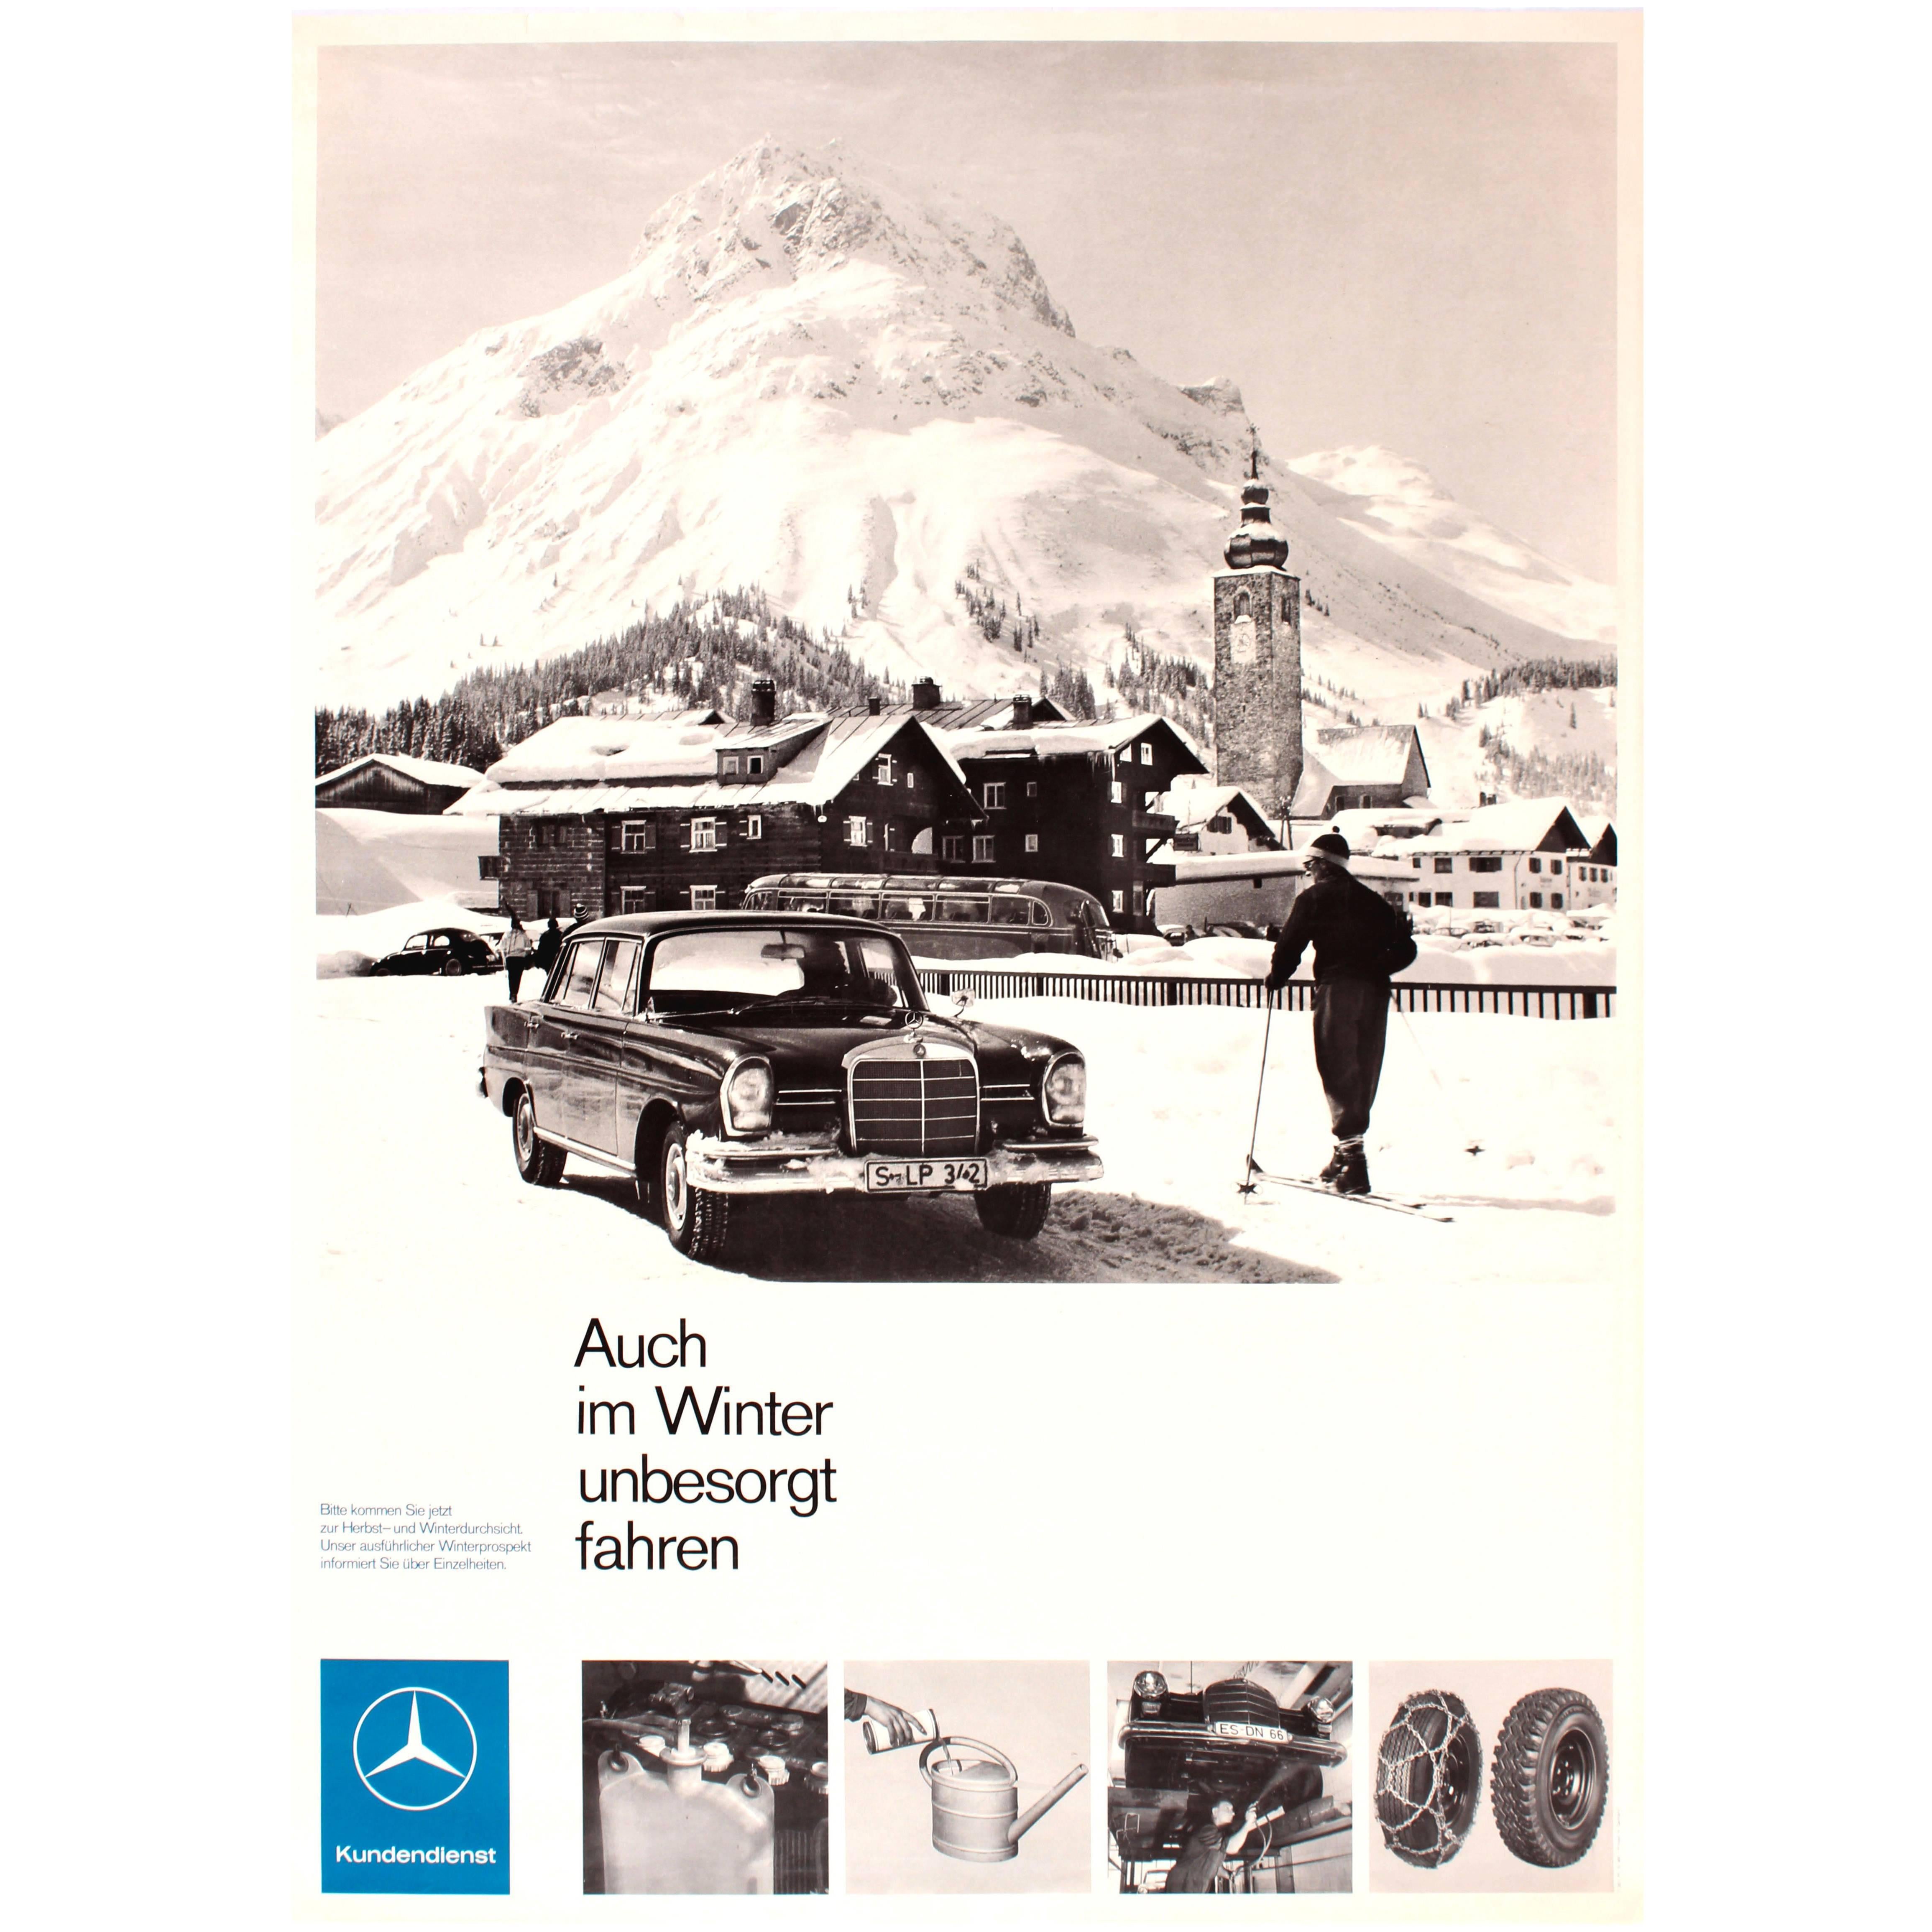 Affiche publicitaire vintage originale de Mercedes Benz, conduite en toute sécurité en hiver